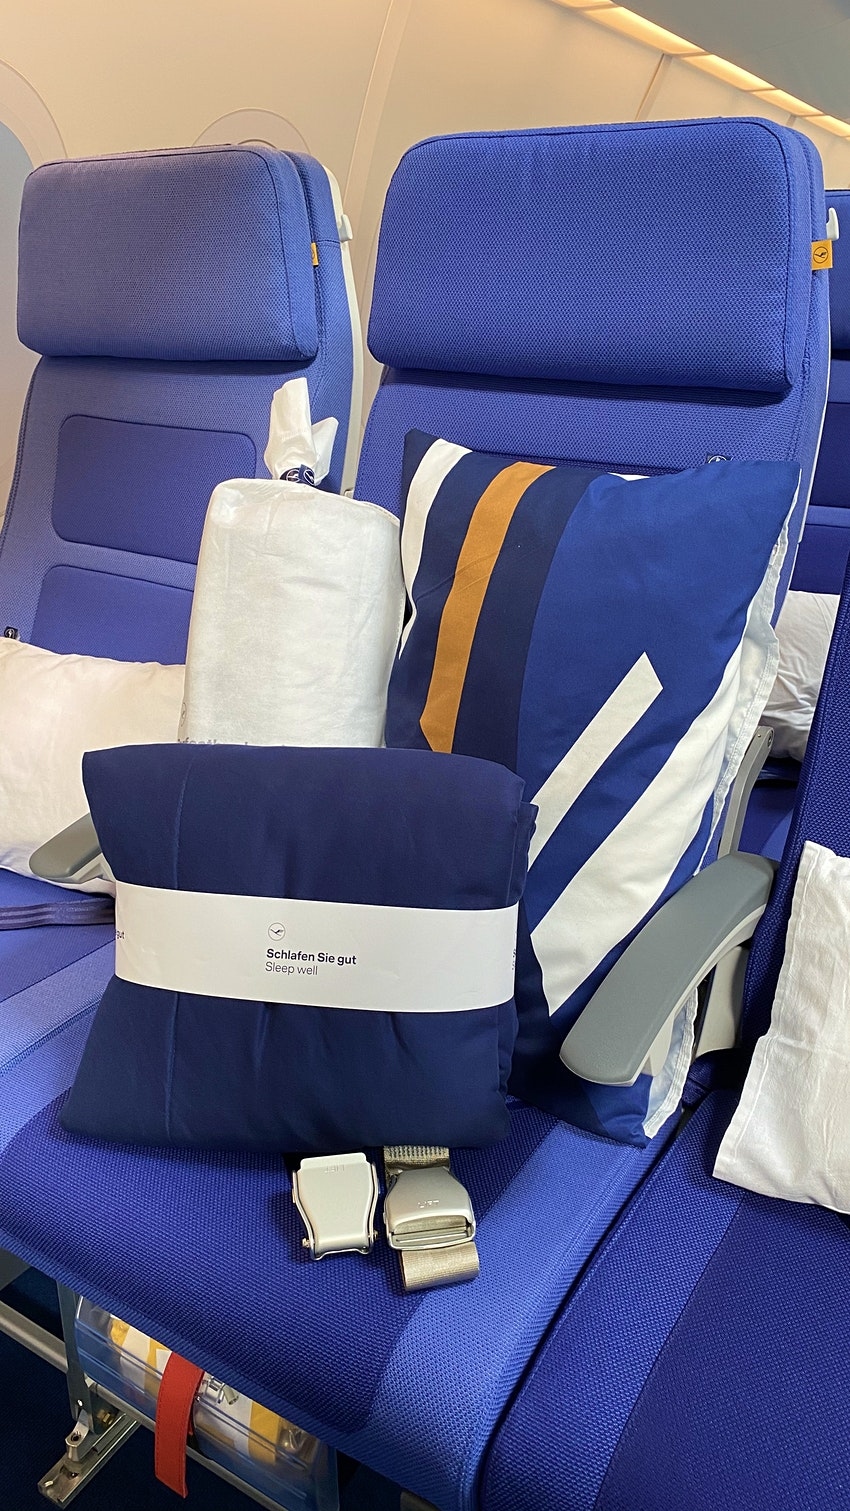 Hành khách được phát gối, chăn để có giấc ngủ thoải mái trên máy bay.